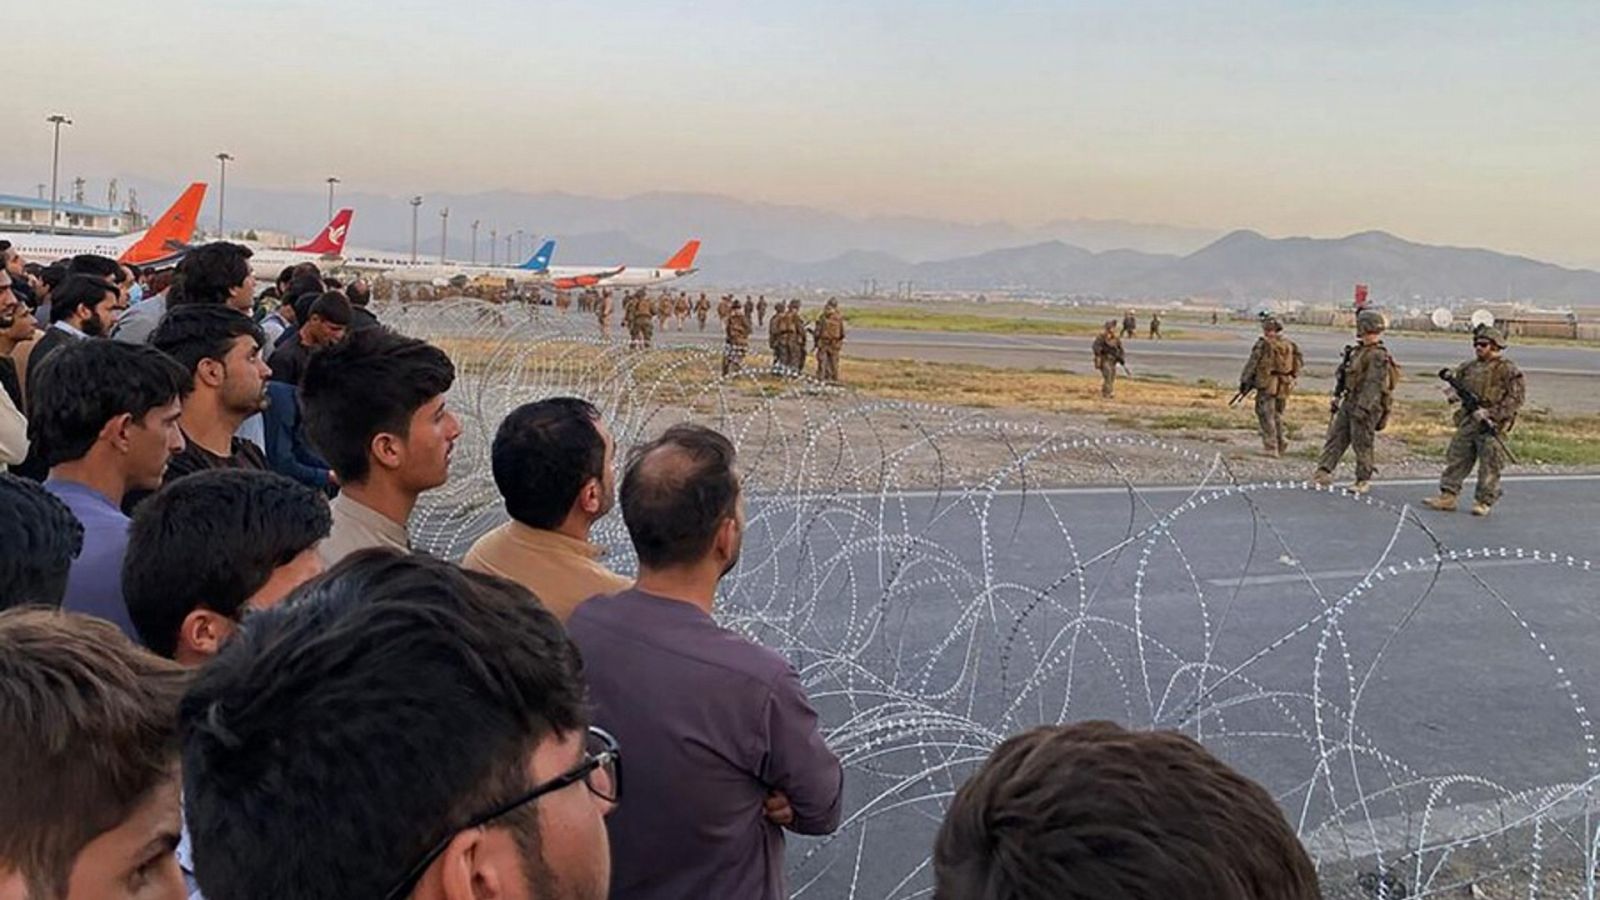 Afganos que intentan abandonar el país para huir de los talibanes se concentran tras una alambrada de espinos en el aeropuerto de Kabul. Enfrente, soldados de EE.UU. Shakib Rahmani / AFP